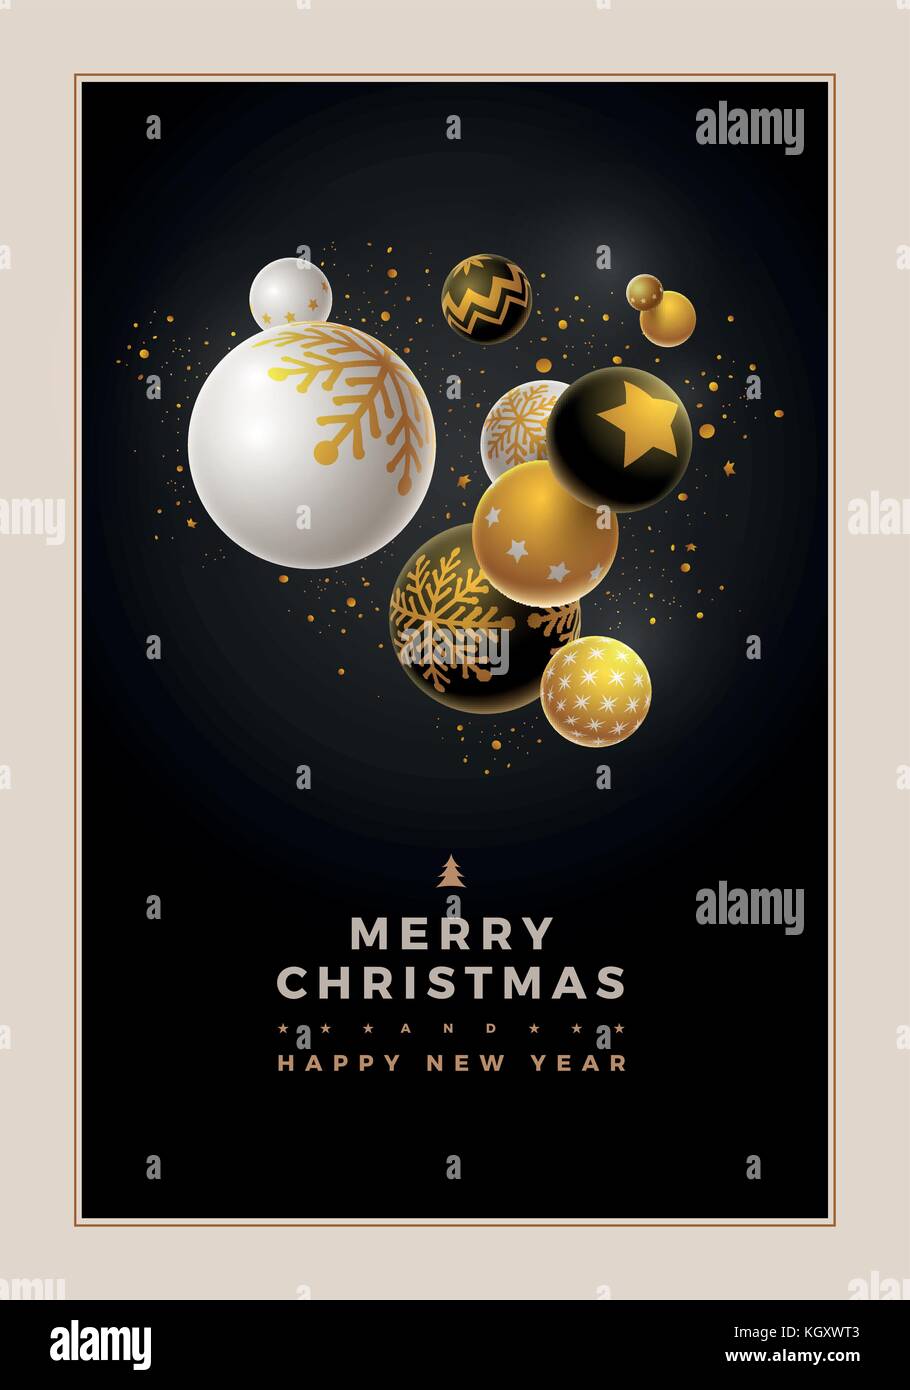 Abstrakte Weihnachten und Neujahr Grußkarte Design mit 3d-weiß, schwarz und gold Weihnachtskugeln. Elemente separat in Vektordatei übereinandergelegt werden. Stock Vektor